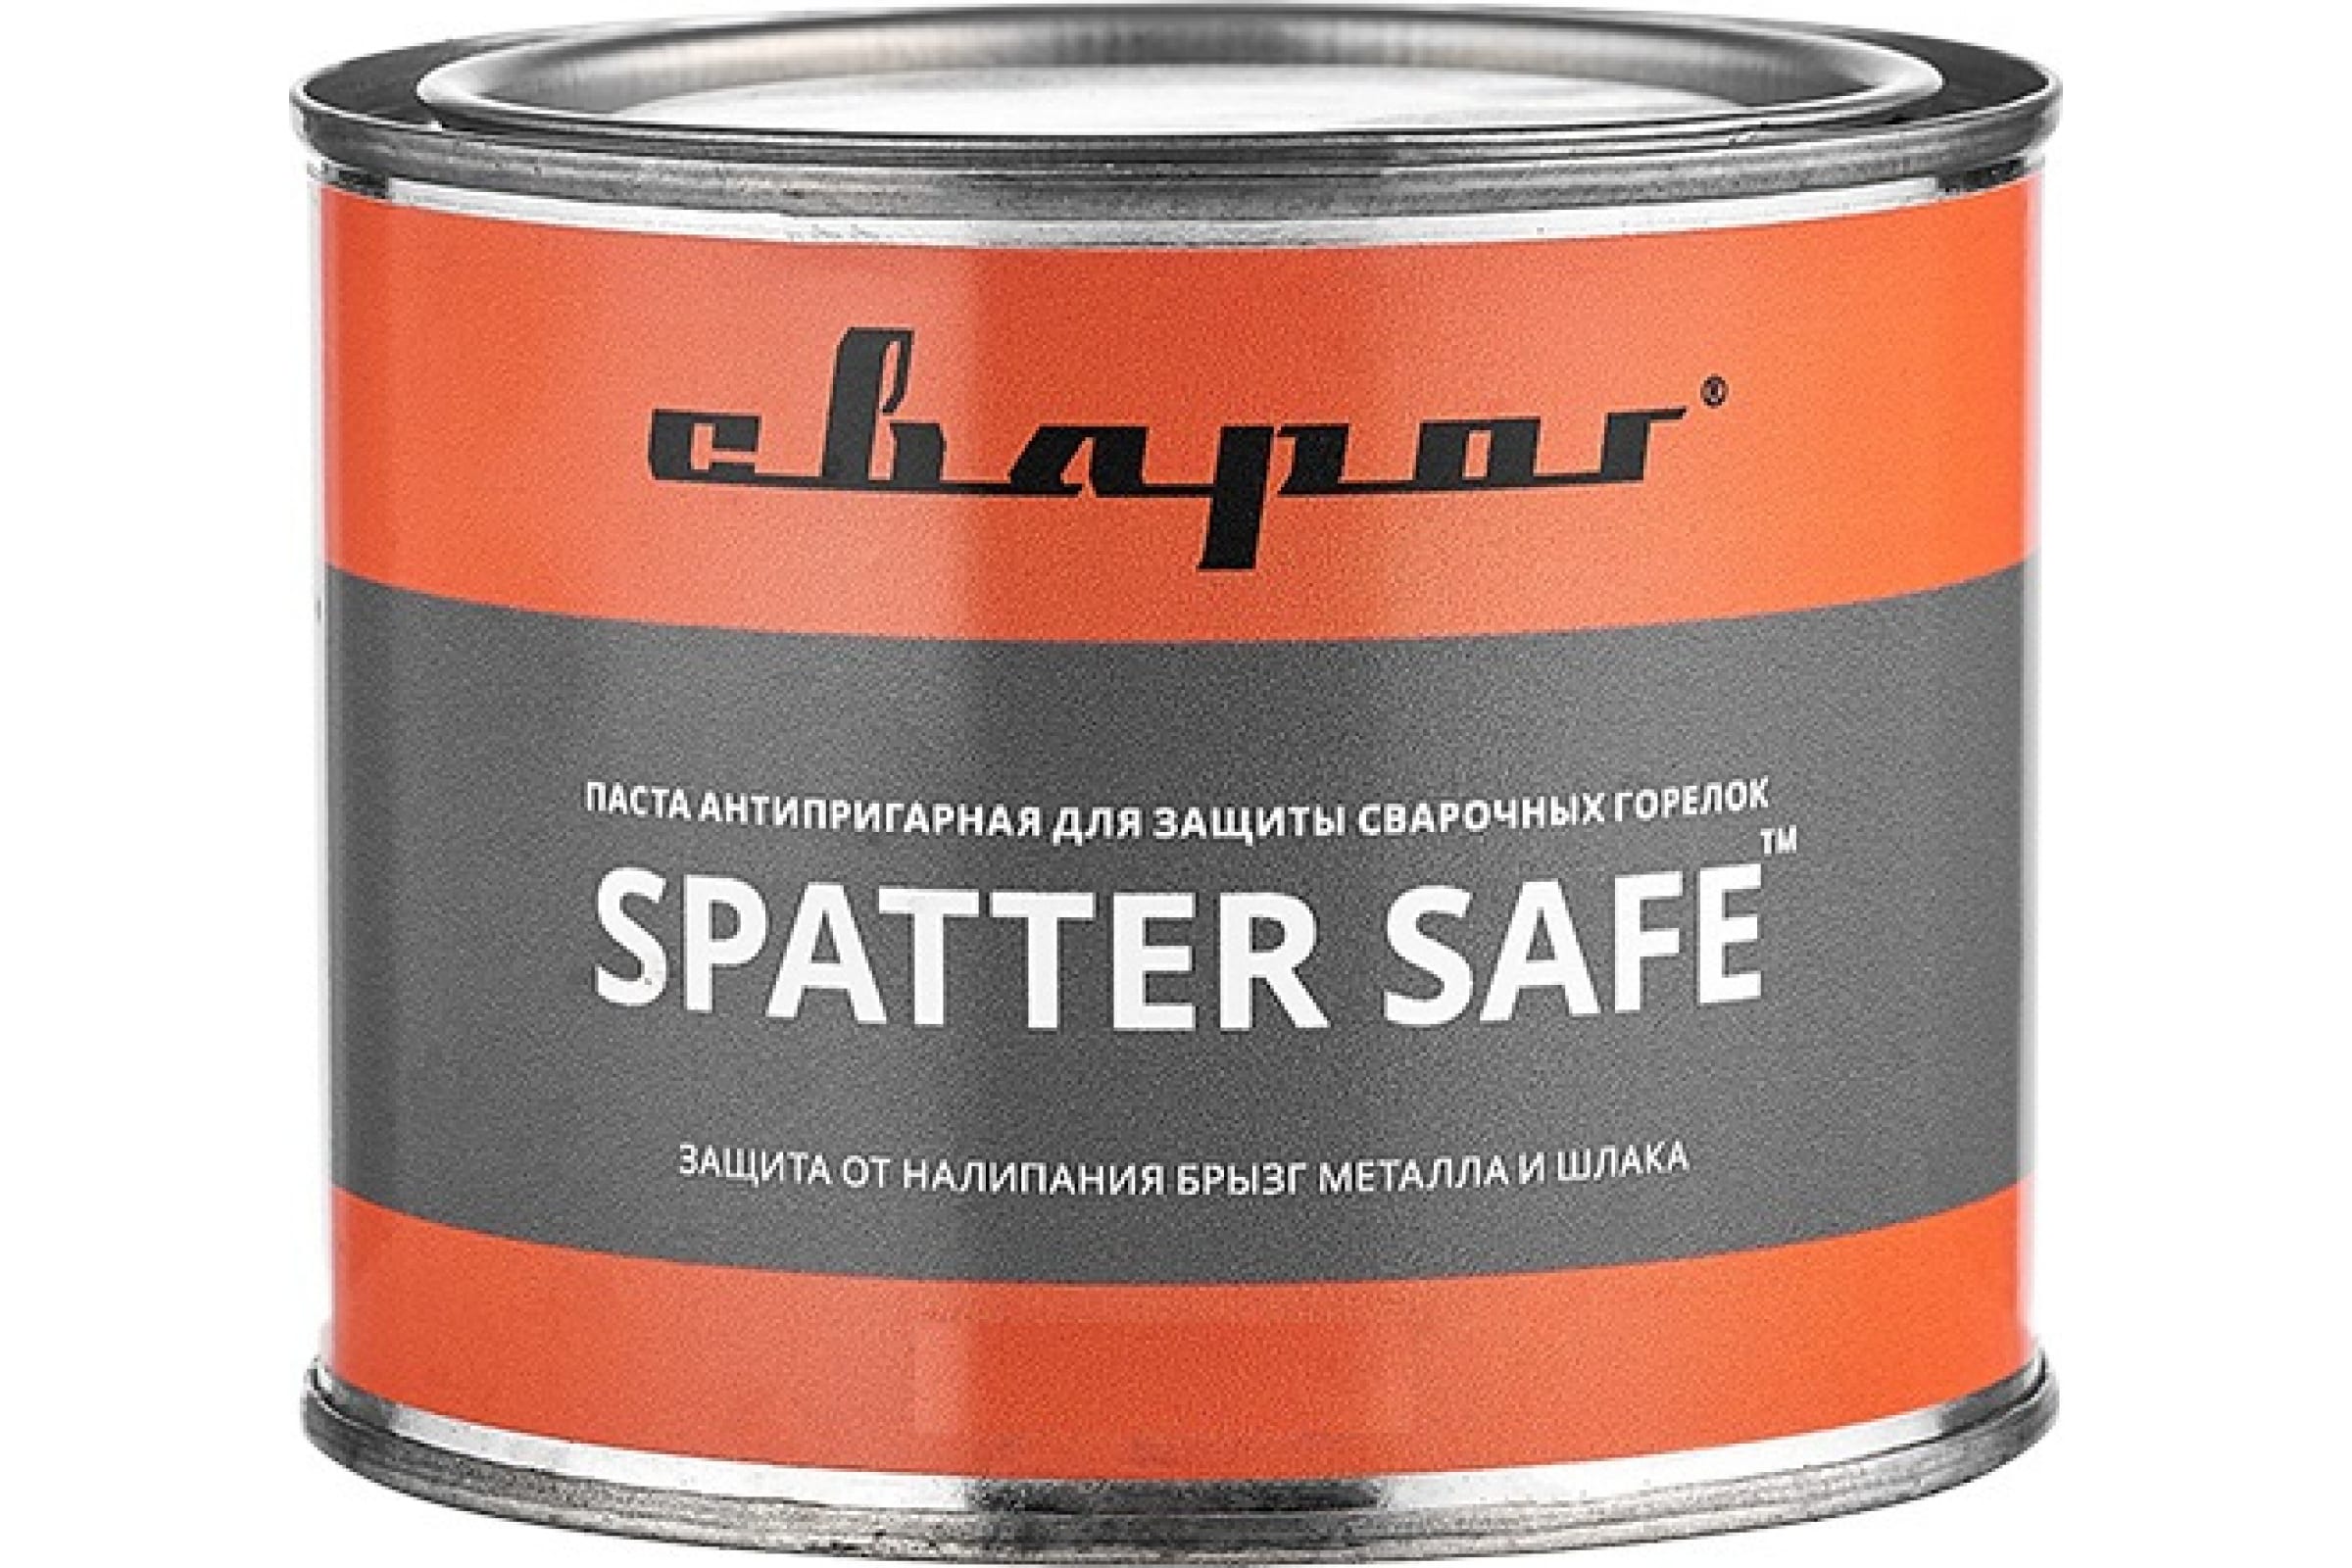 Сварог Паста антипригарная для защиты сварочных горелок Spatter Safe, 300 гр. ТМ 98941